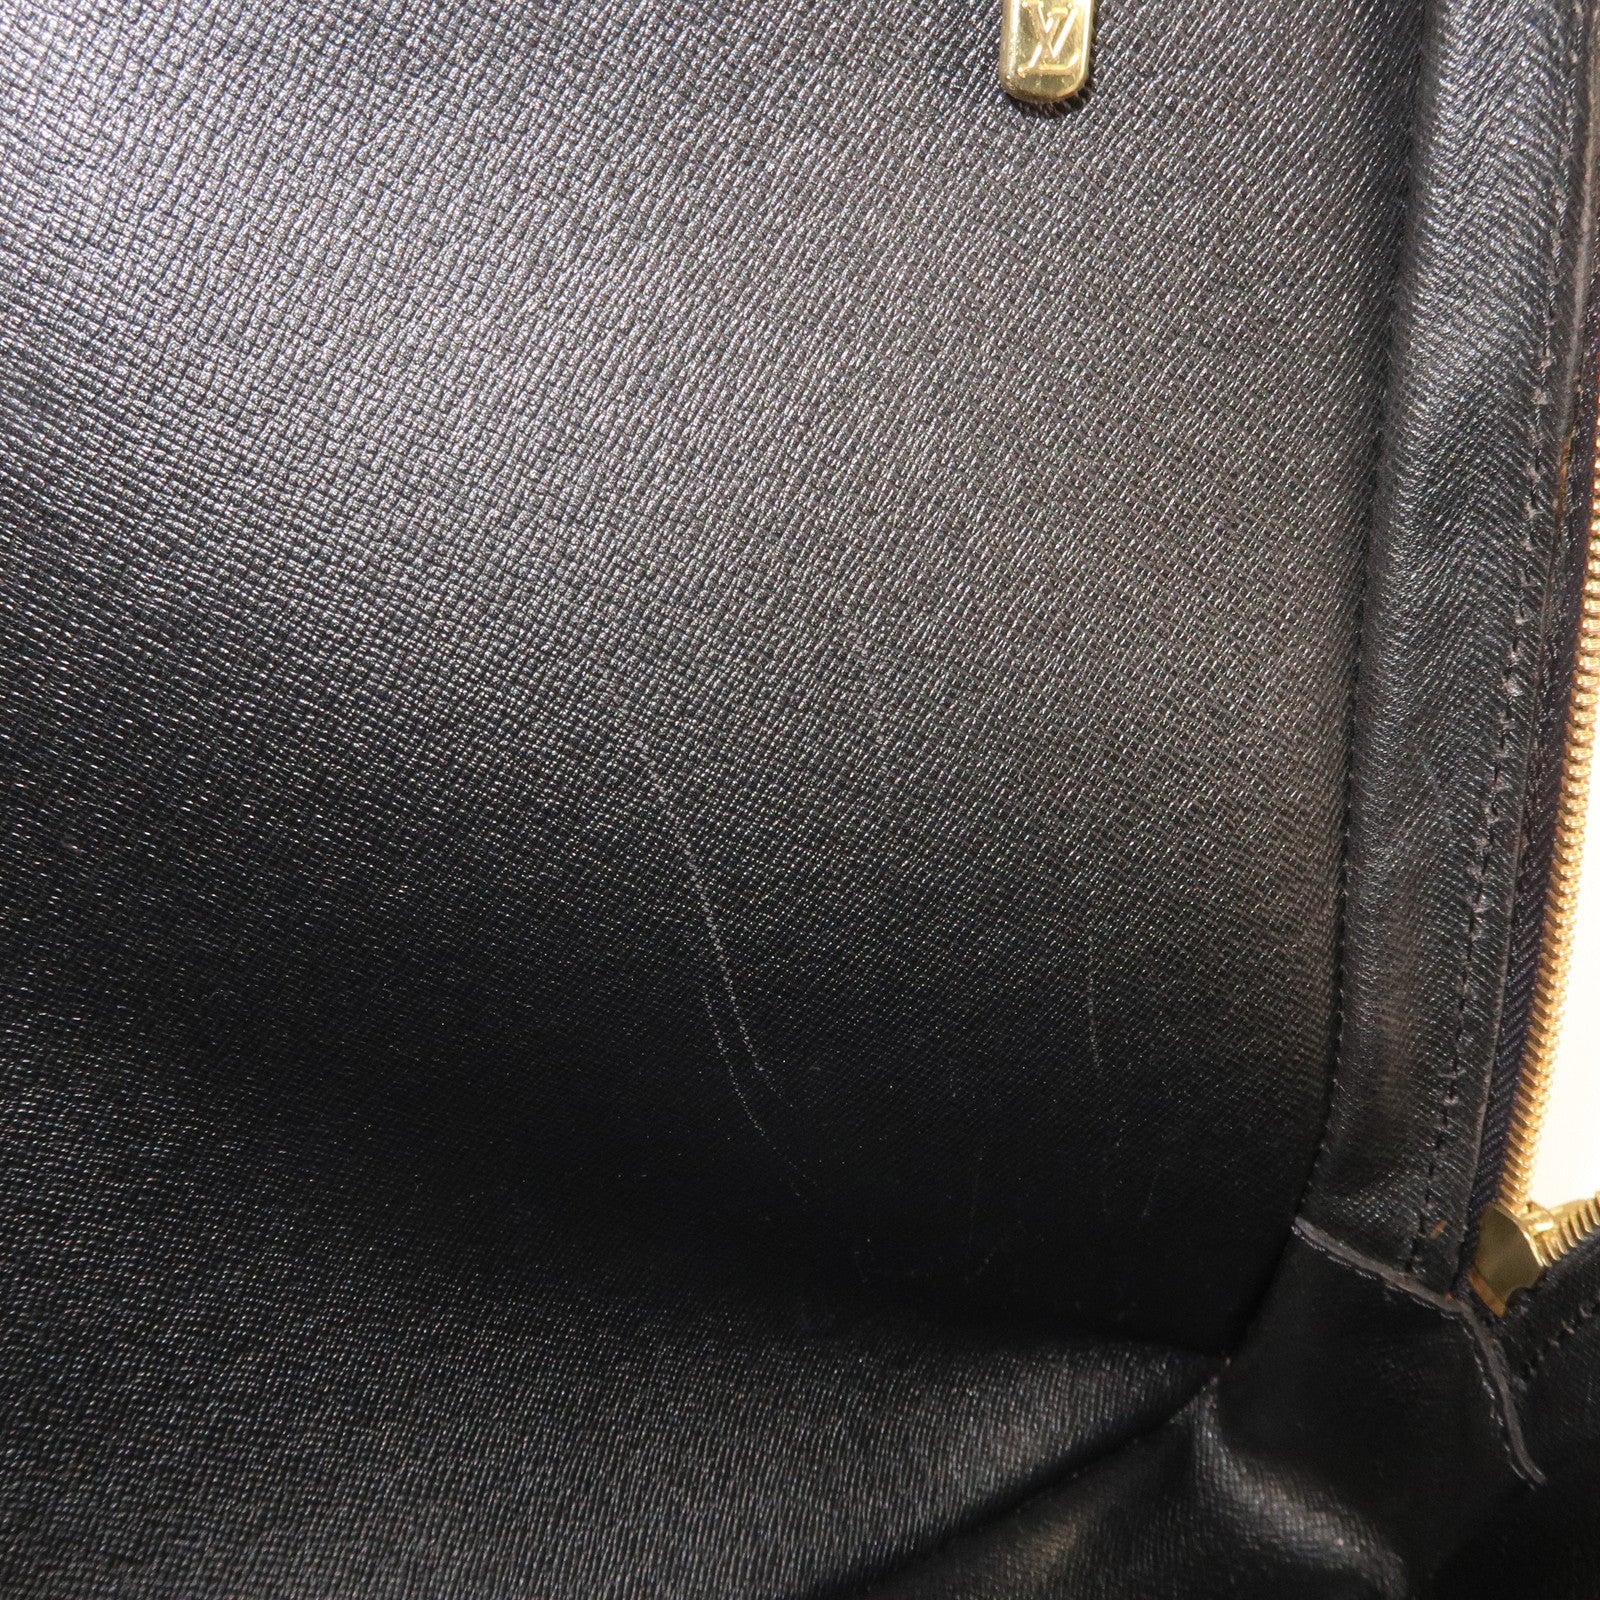 Louis+Vuitton+Porte+Documents+Voyage+Handbag+Black+Leather for